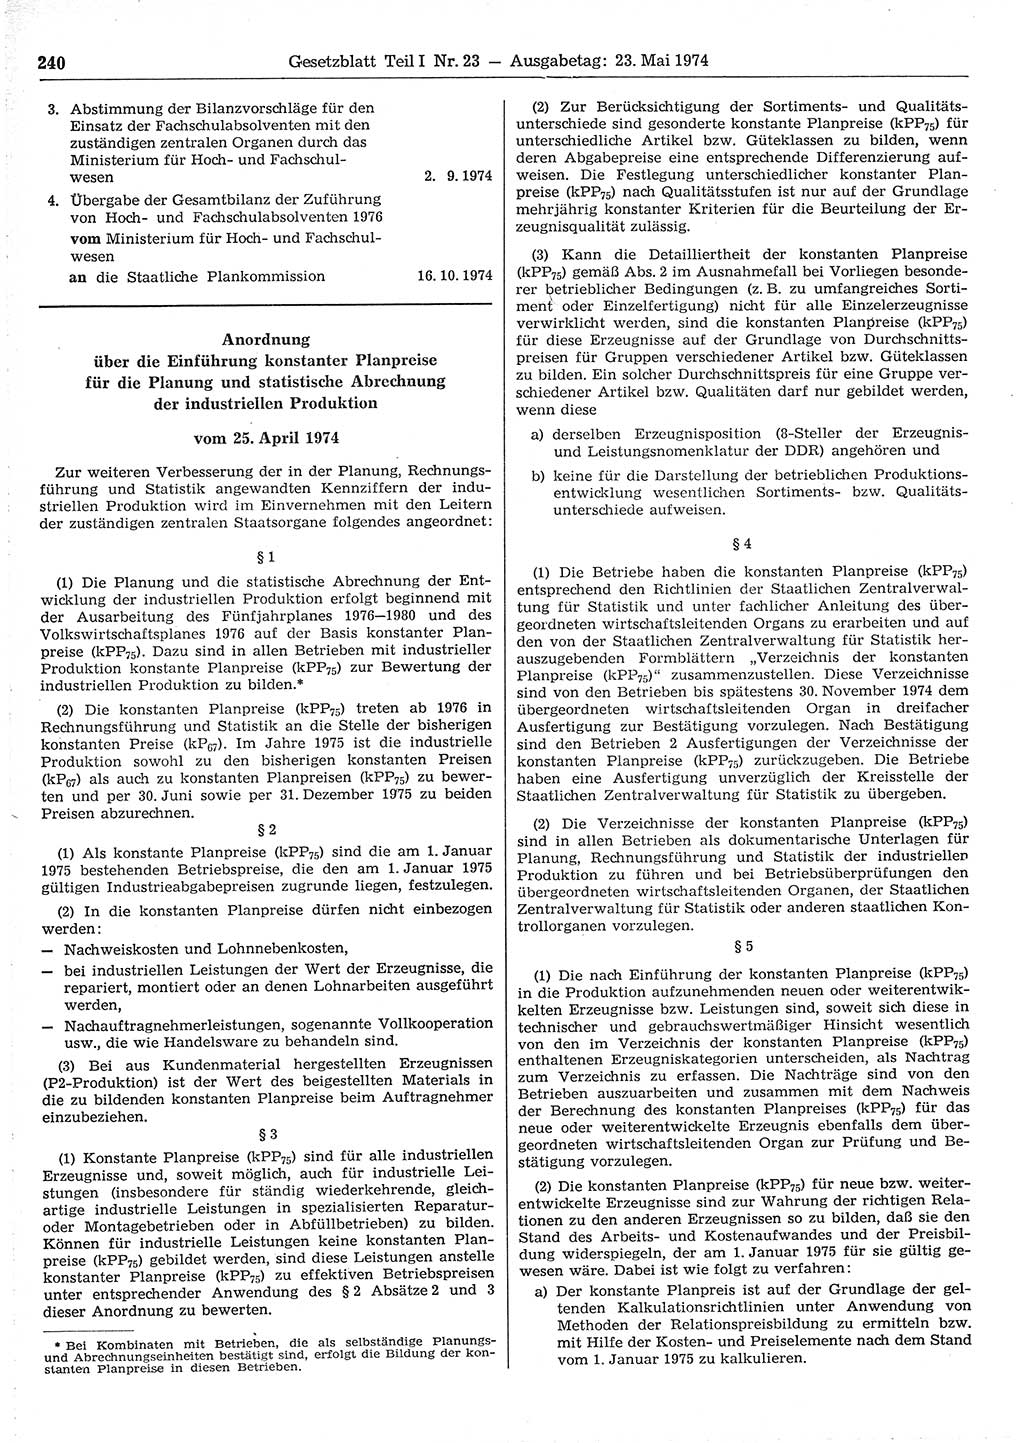 Gesetzblatt (GBl.) der Deutschen Demokratischen Republik (DDR) Teil Ⅰ 1974, Seite 240 (GBl. DDR Ⅰ 1974, S. 240)